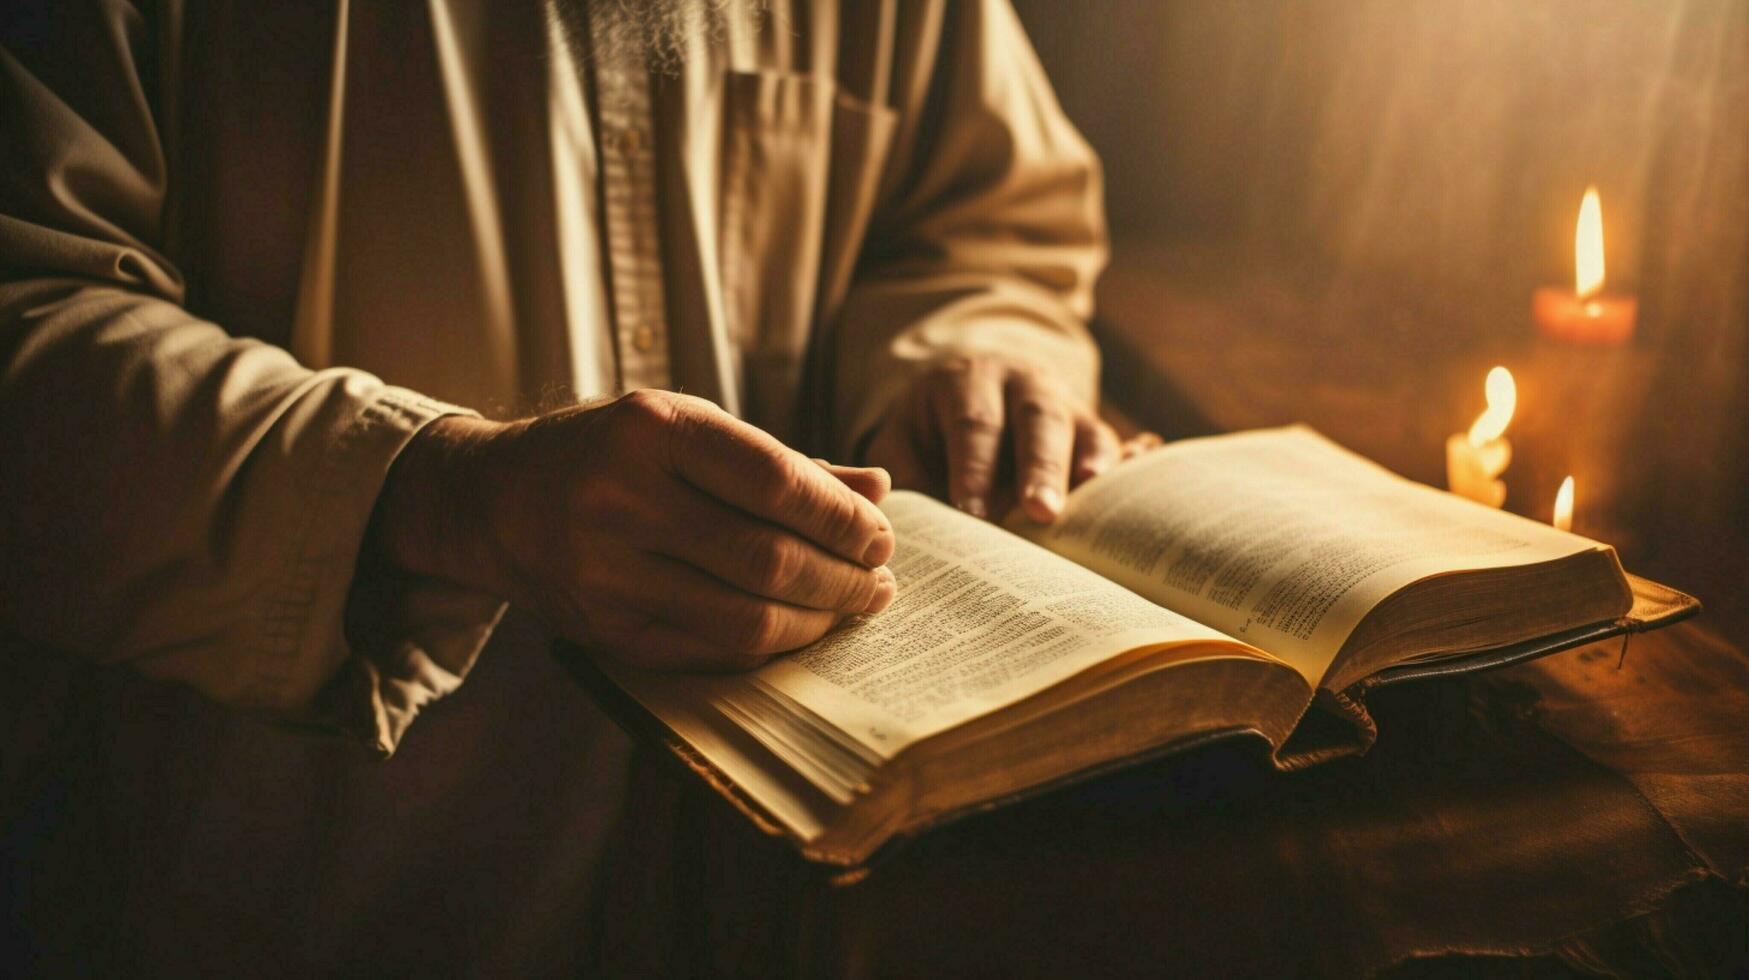 Hand halten Bibel studieren religiös Text drinnen foto